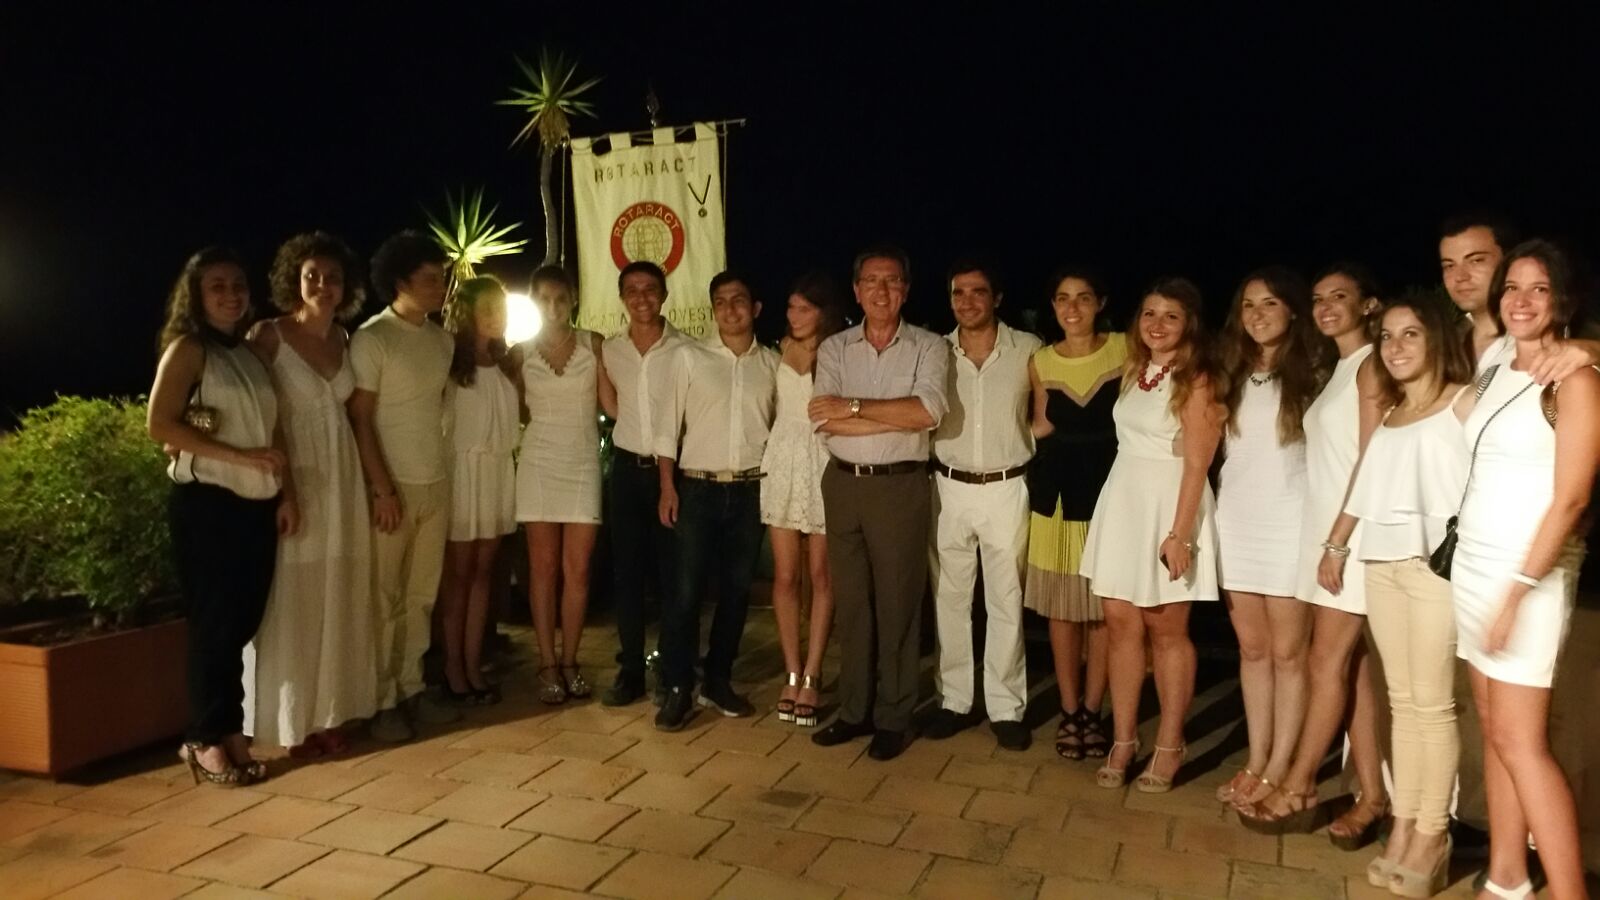 028 - Presenze del Governatore - Raccolta fondi del Rotaract Club Catania Ovest - Taormina Agosto 2015/20150825065703.jpg